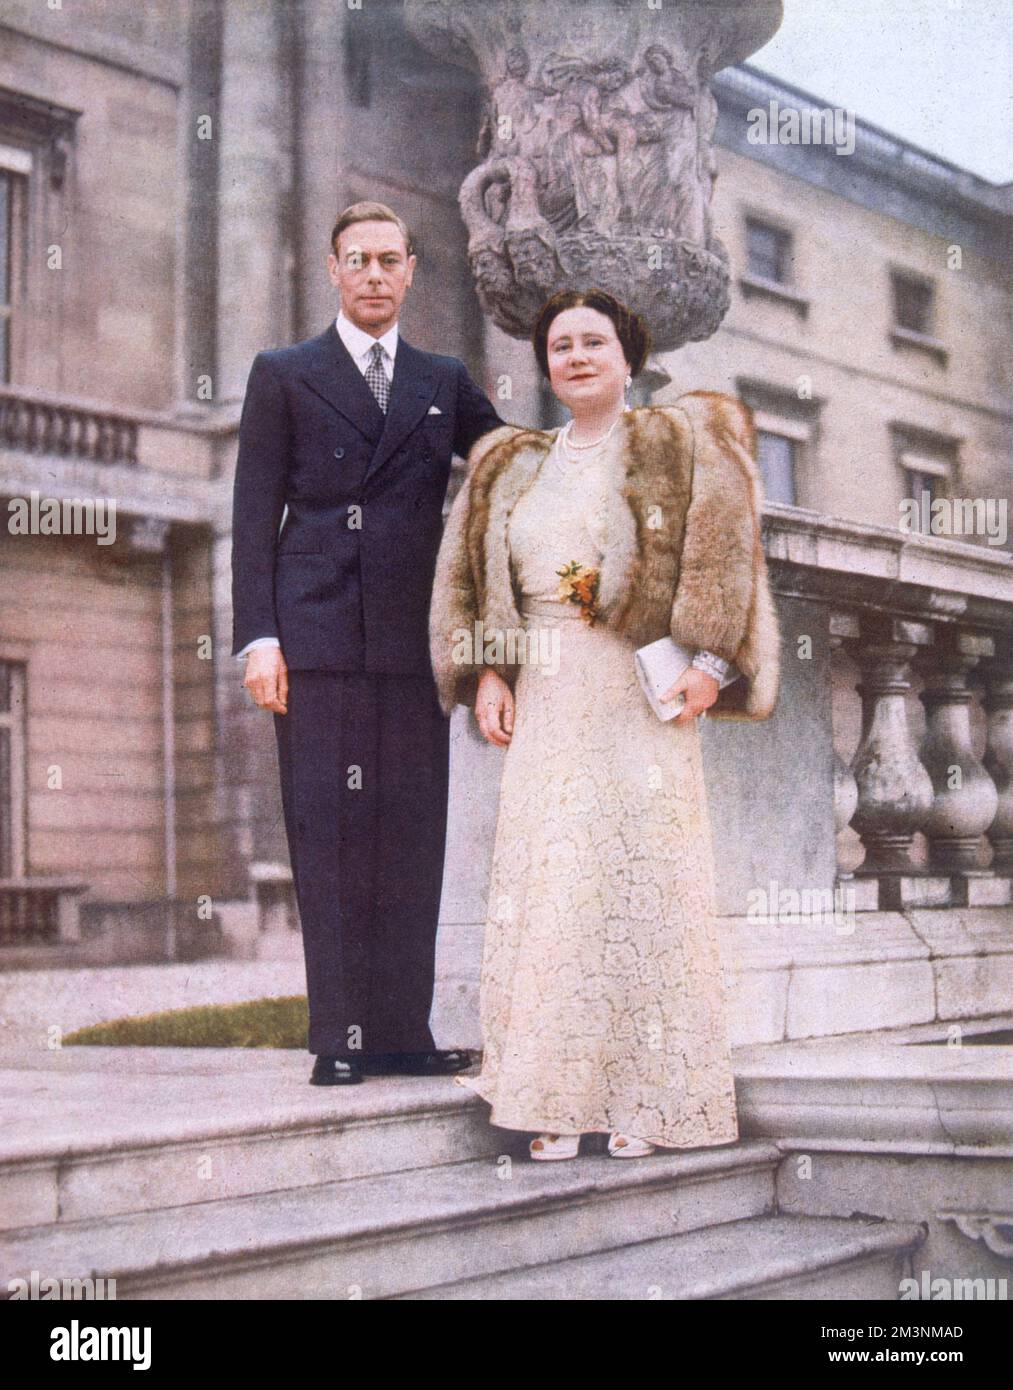 König George VI (1895 - 1952) und Königin Elizabeth, die Königinmutter (1900 - 2002), auf der Terrasse im Garten des Buckingham Palace in einer Reihe von Bildern zu ihrem silbernen Hochzeitstag abgebildet. Datum: 1948 Stockfoto